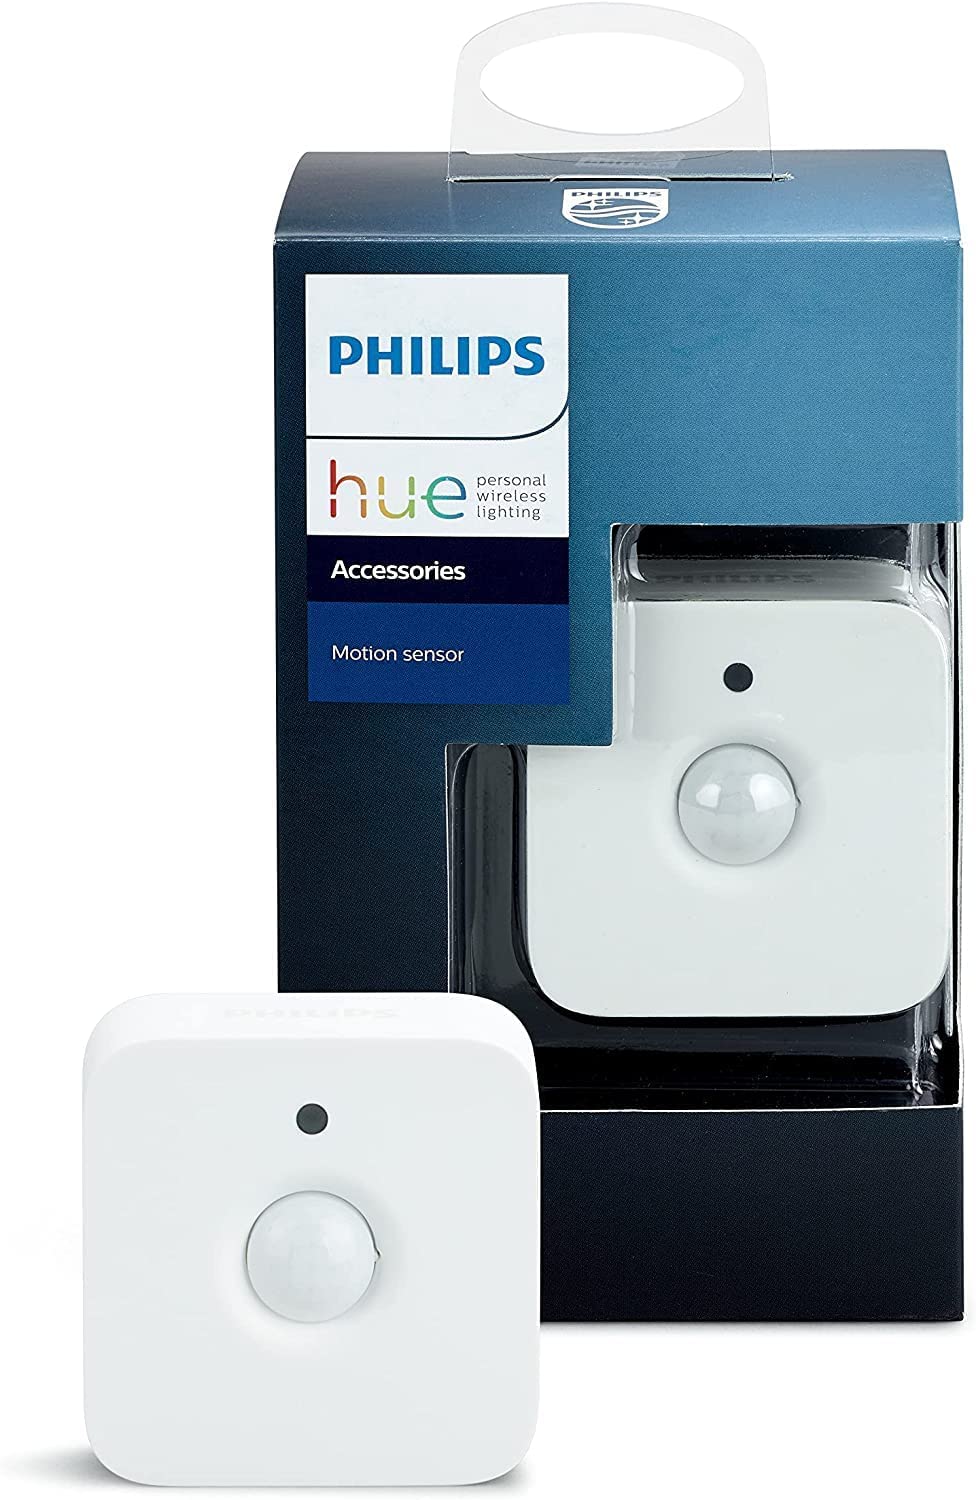 Bild zu Philips Hue Bewegungssensor für 29,99€ (Vergleich: 33,99€)